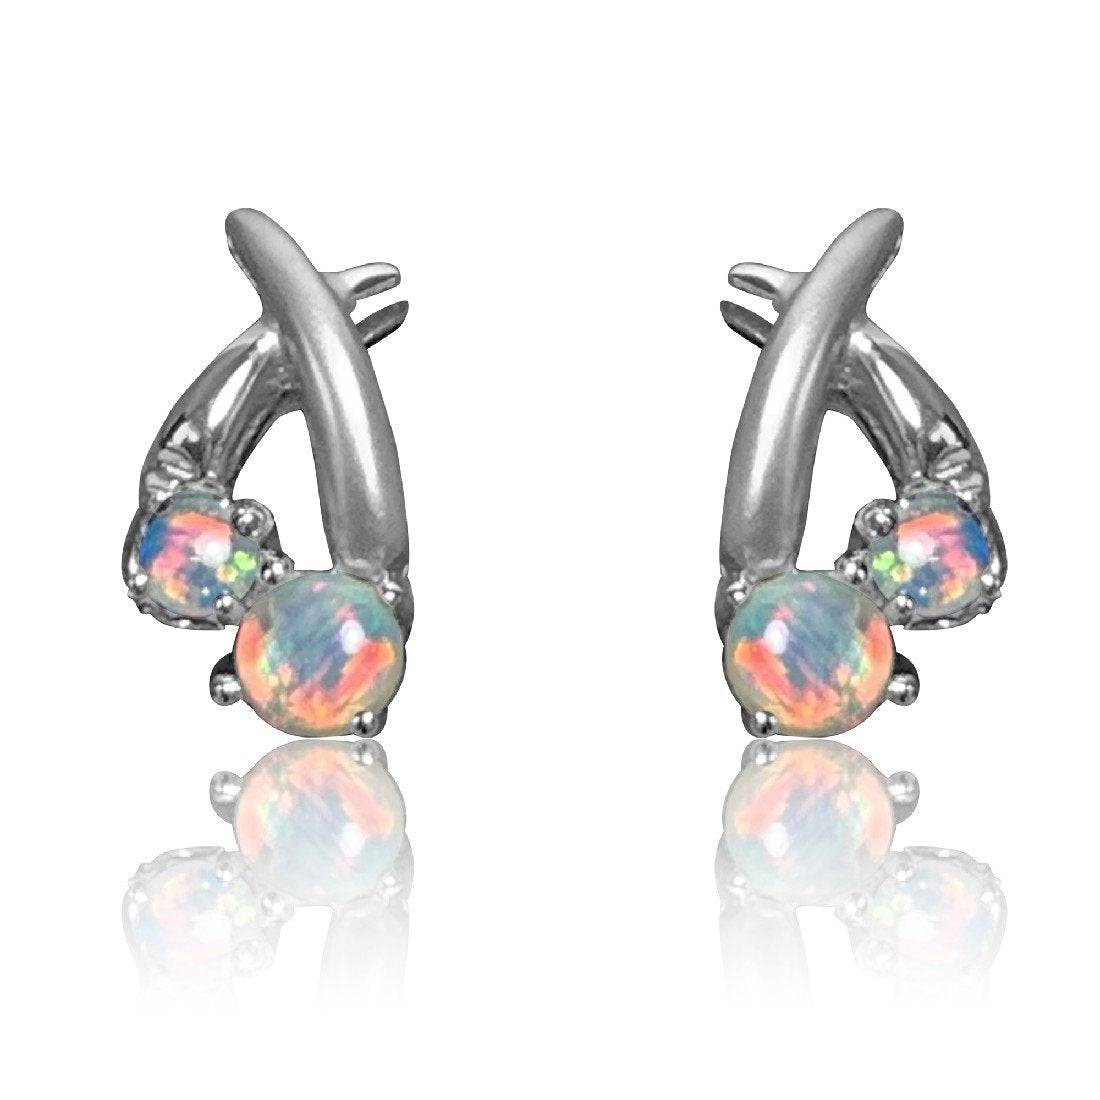 18kt White Gold Opal earrings - Masterpiece Jewellery Opal & Gems Sydney Australia | Online Shop